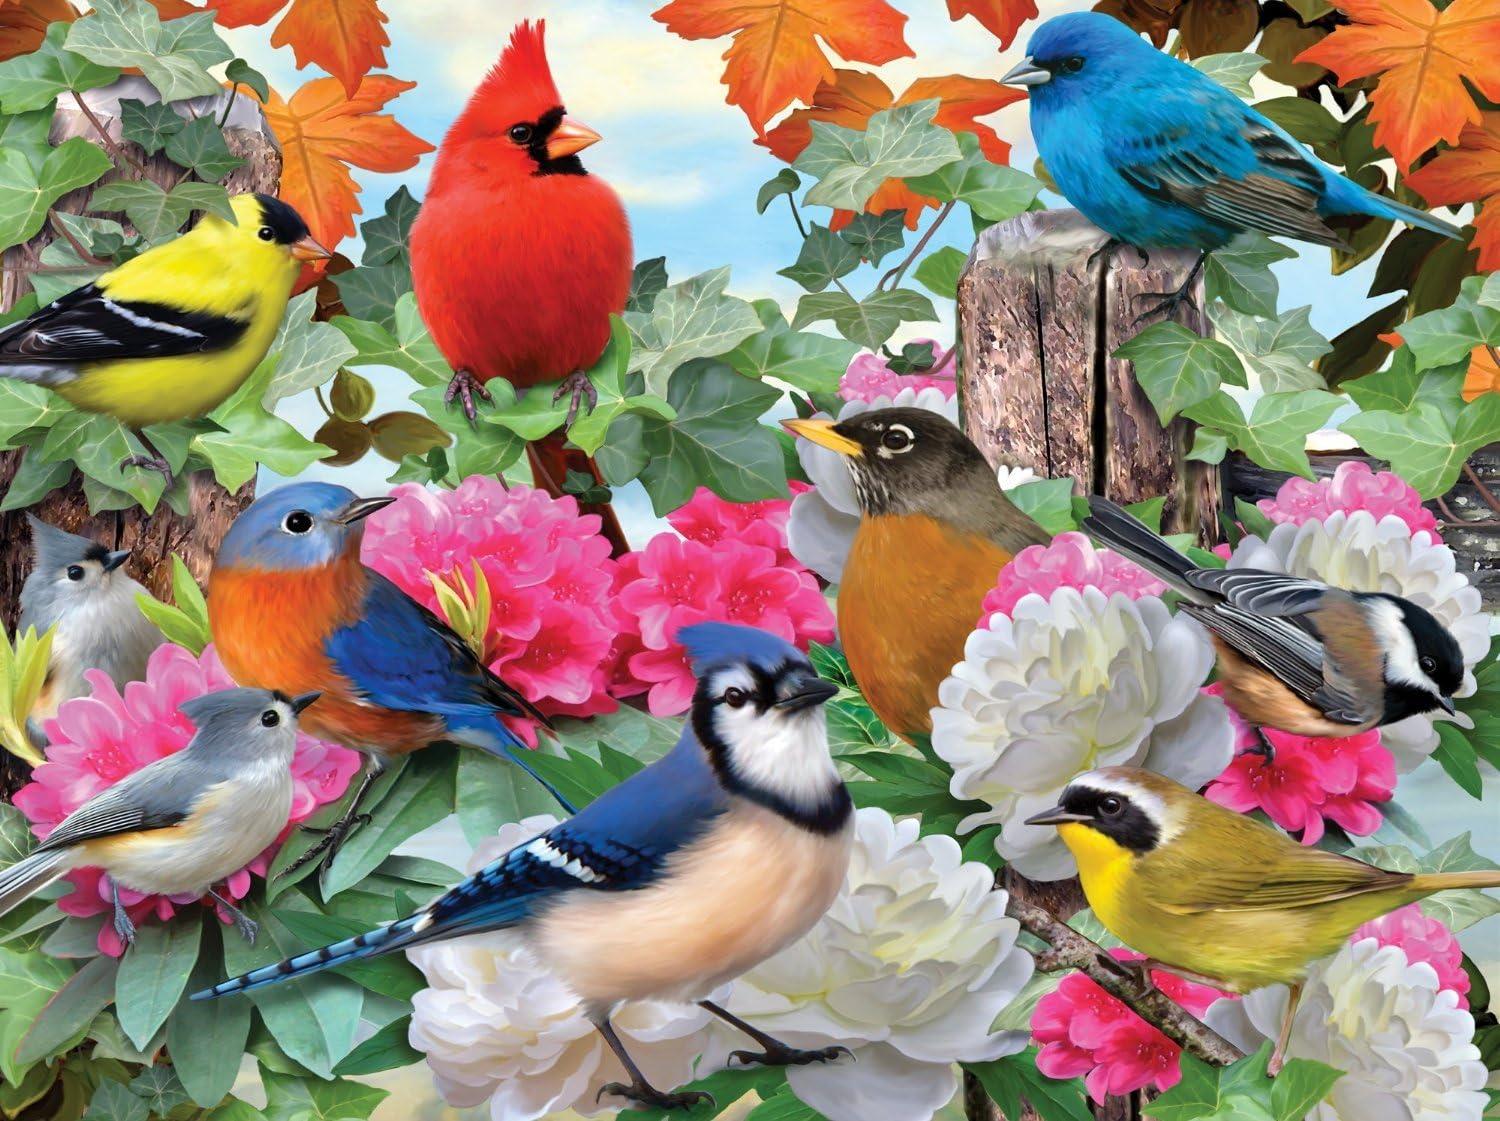 Ravensburger Garden Birds Jigsaw Puzzle (500 Pieces)